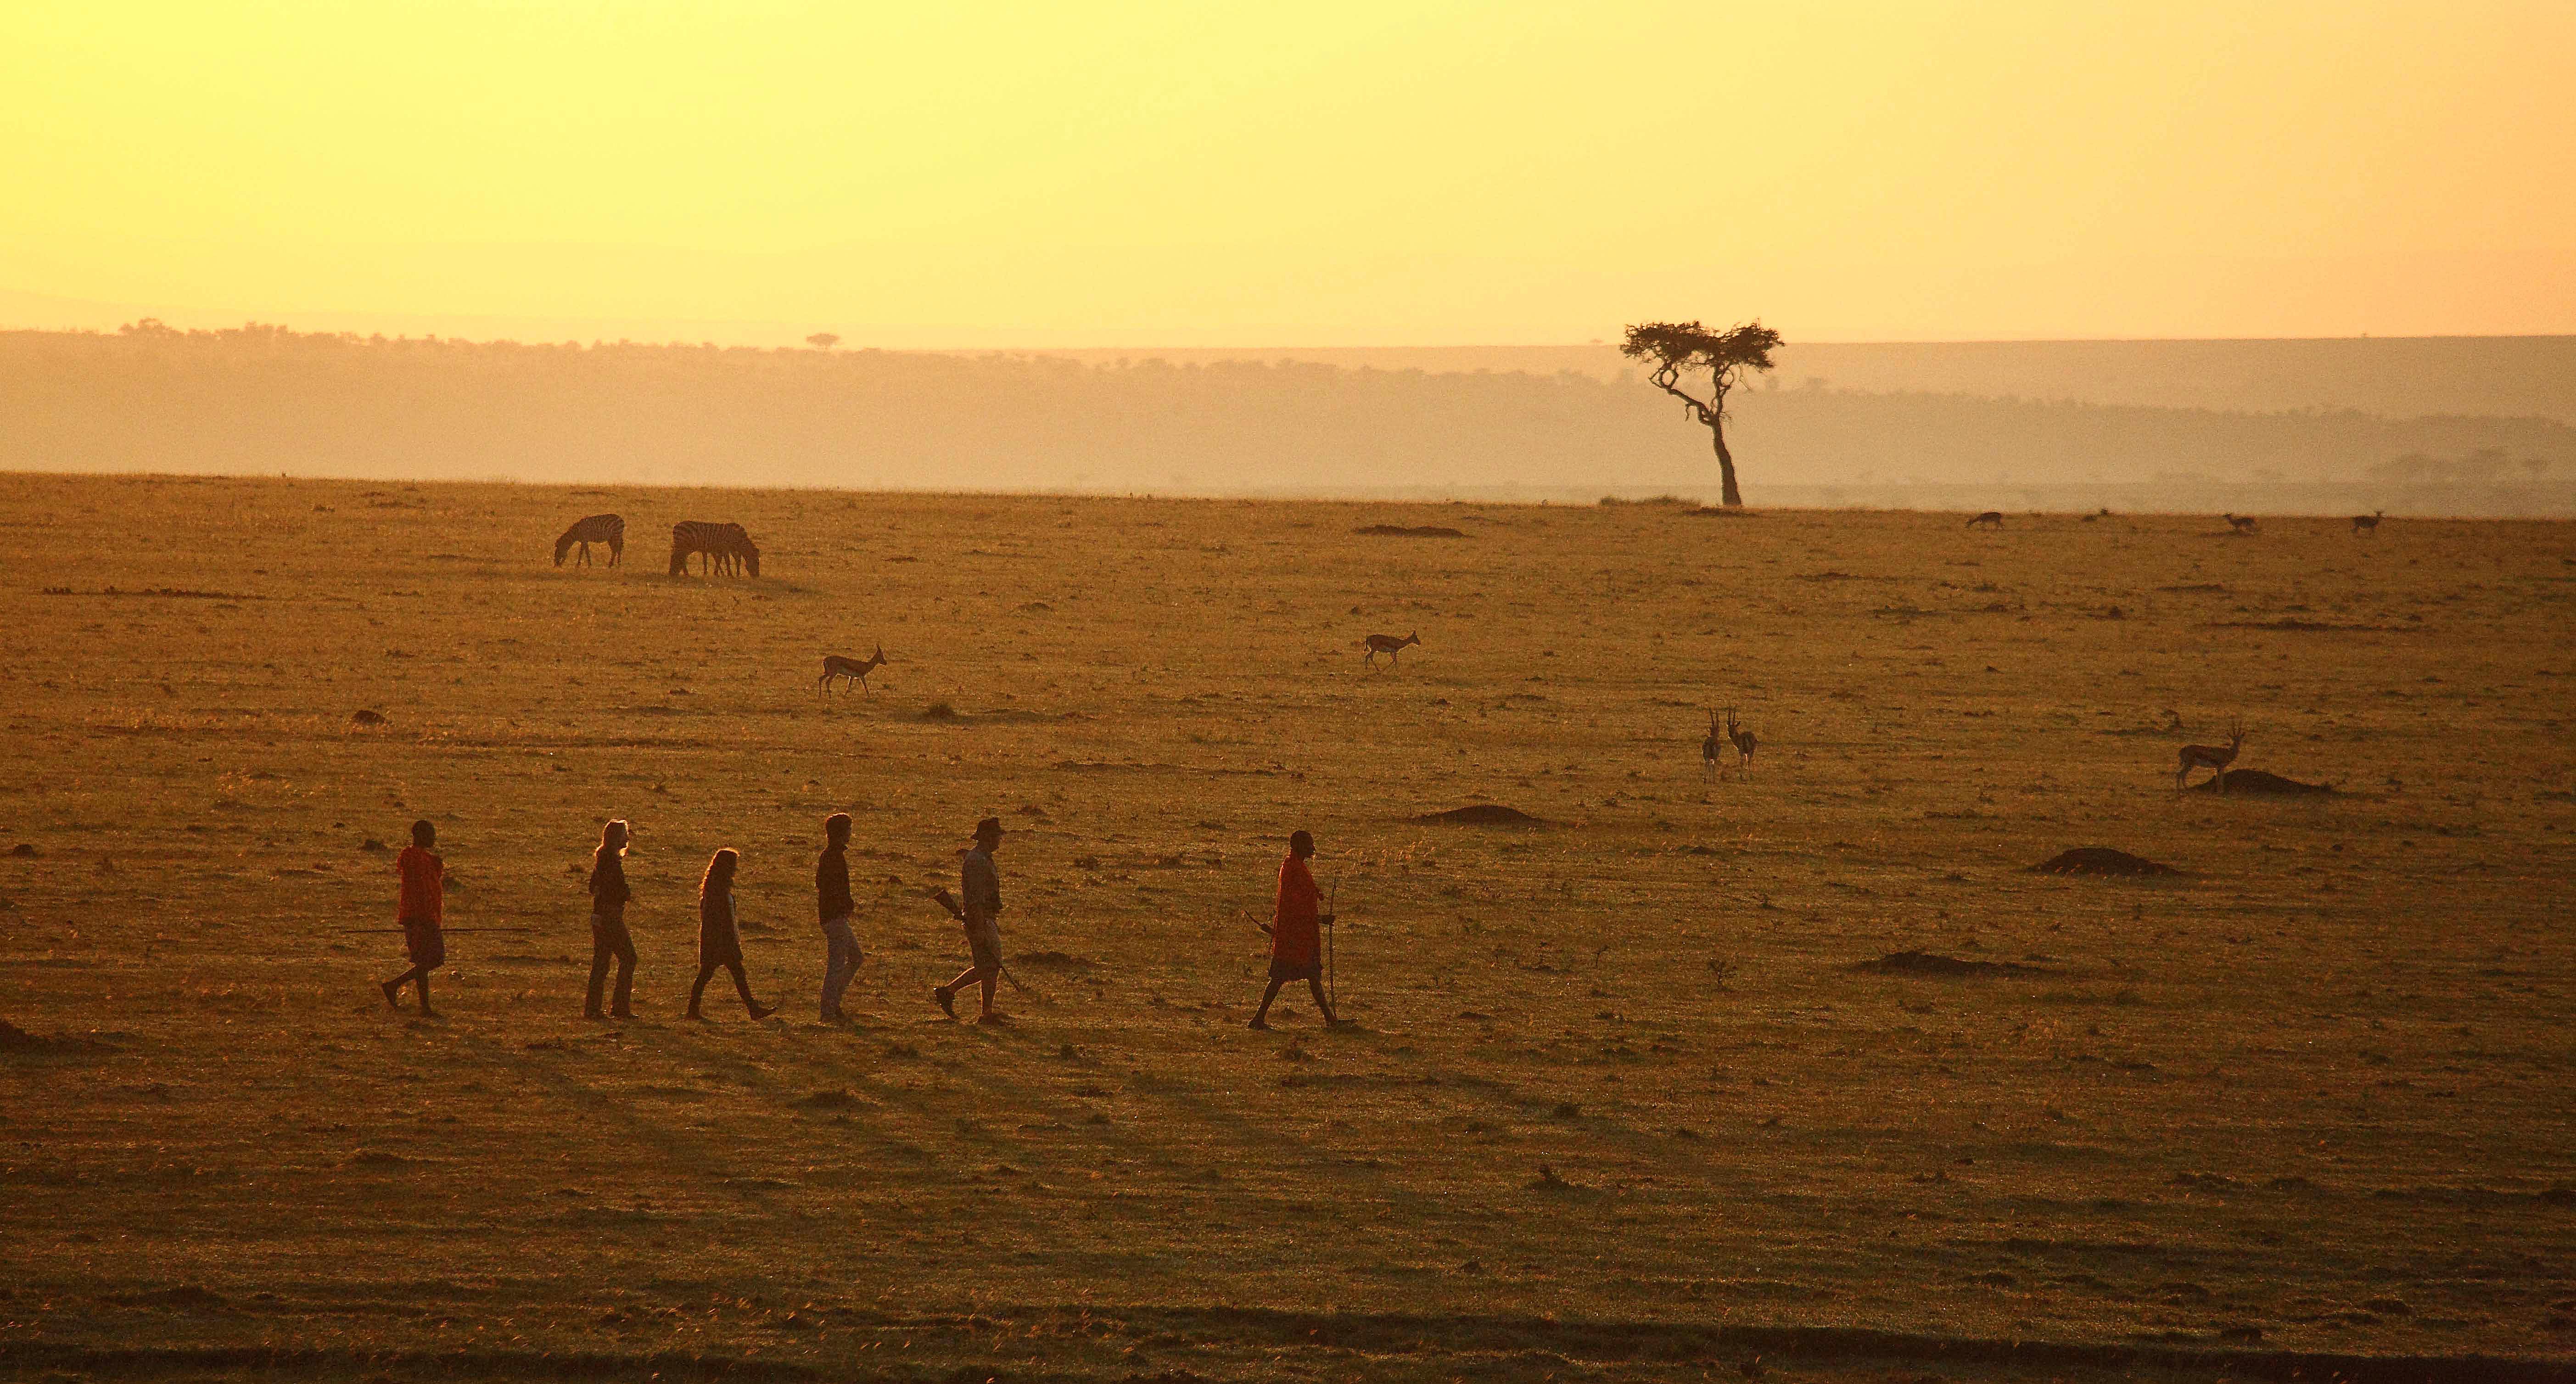 Walking Safaris